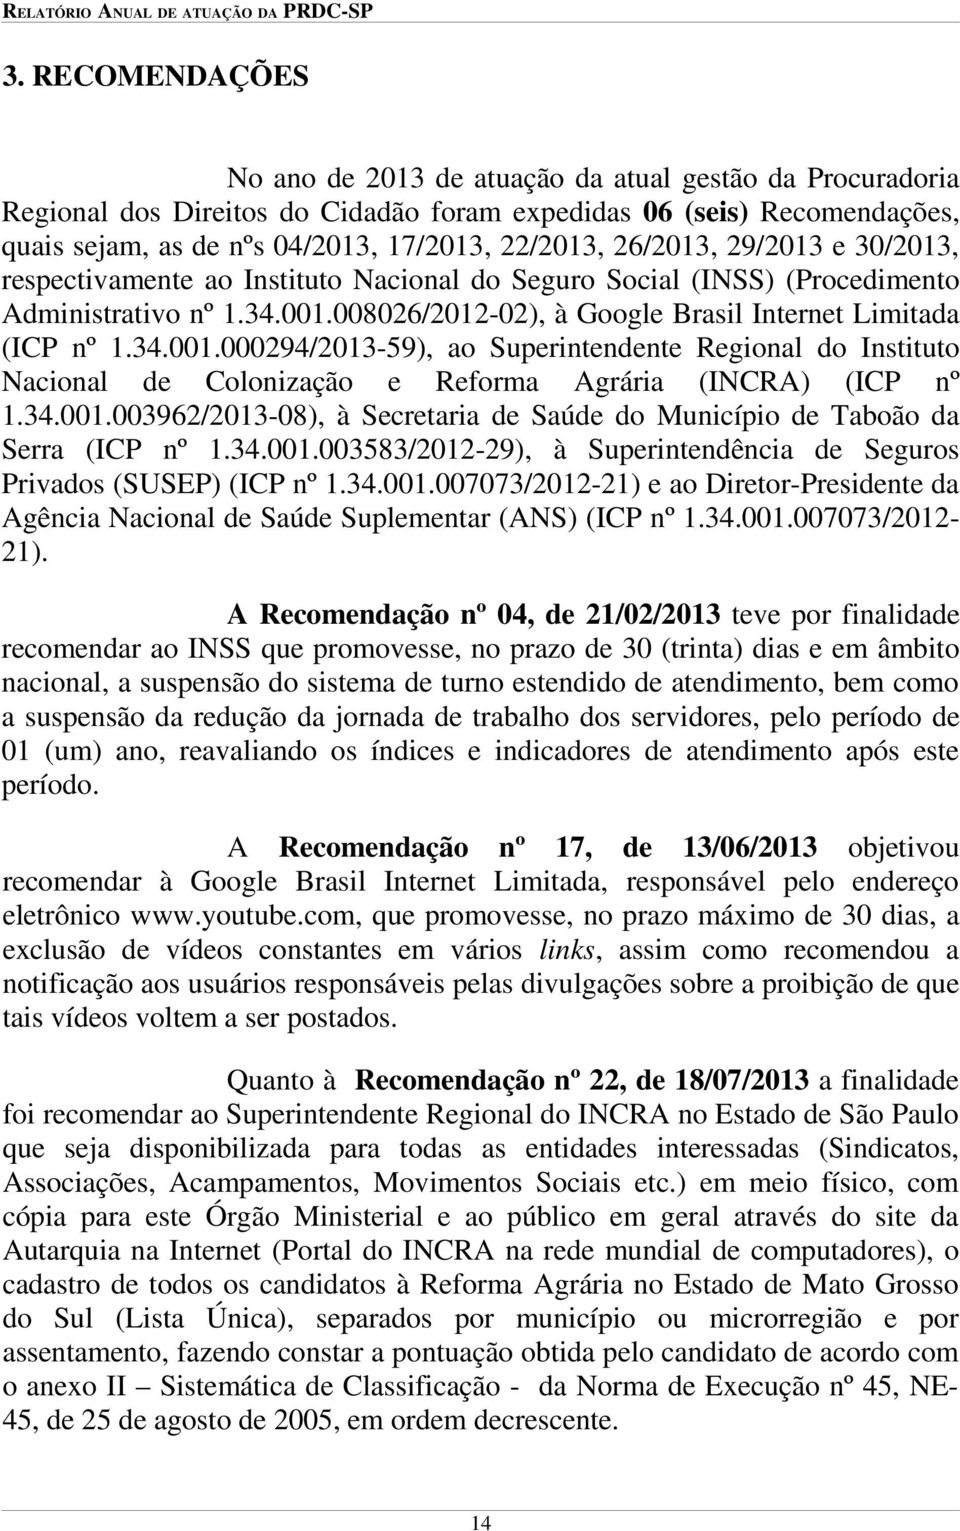 008026/2012-02), à Google Brasil Internet Limitada (ICP nº 1.34.001.000294/2013-59), ao Superintendente Regional do Instituto Nacional de Colonização e Reforma Agrária (INCRA) (ICP nº 1.34.001.003962/2013-08), à Secretaria de Saúde do Município de Taboão da Serra (ICP nº 1.